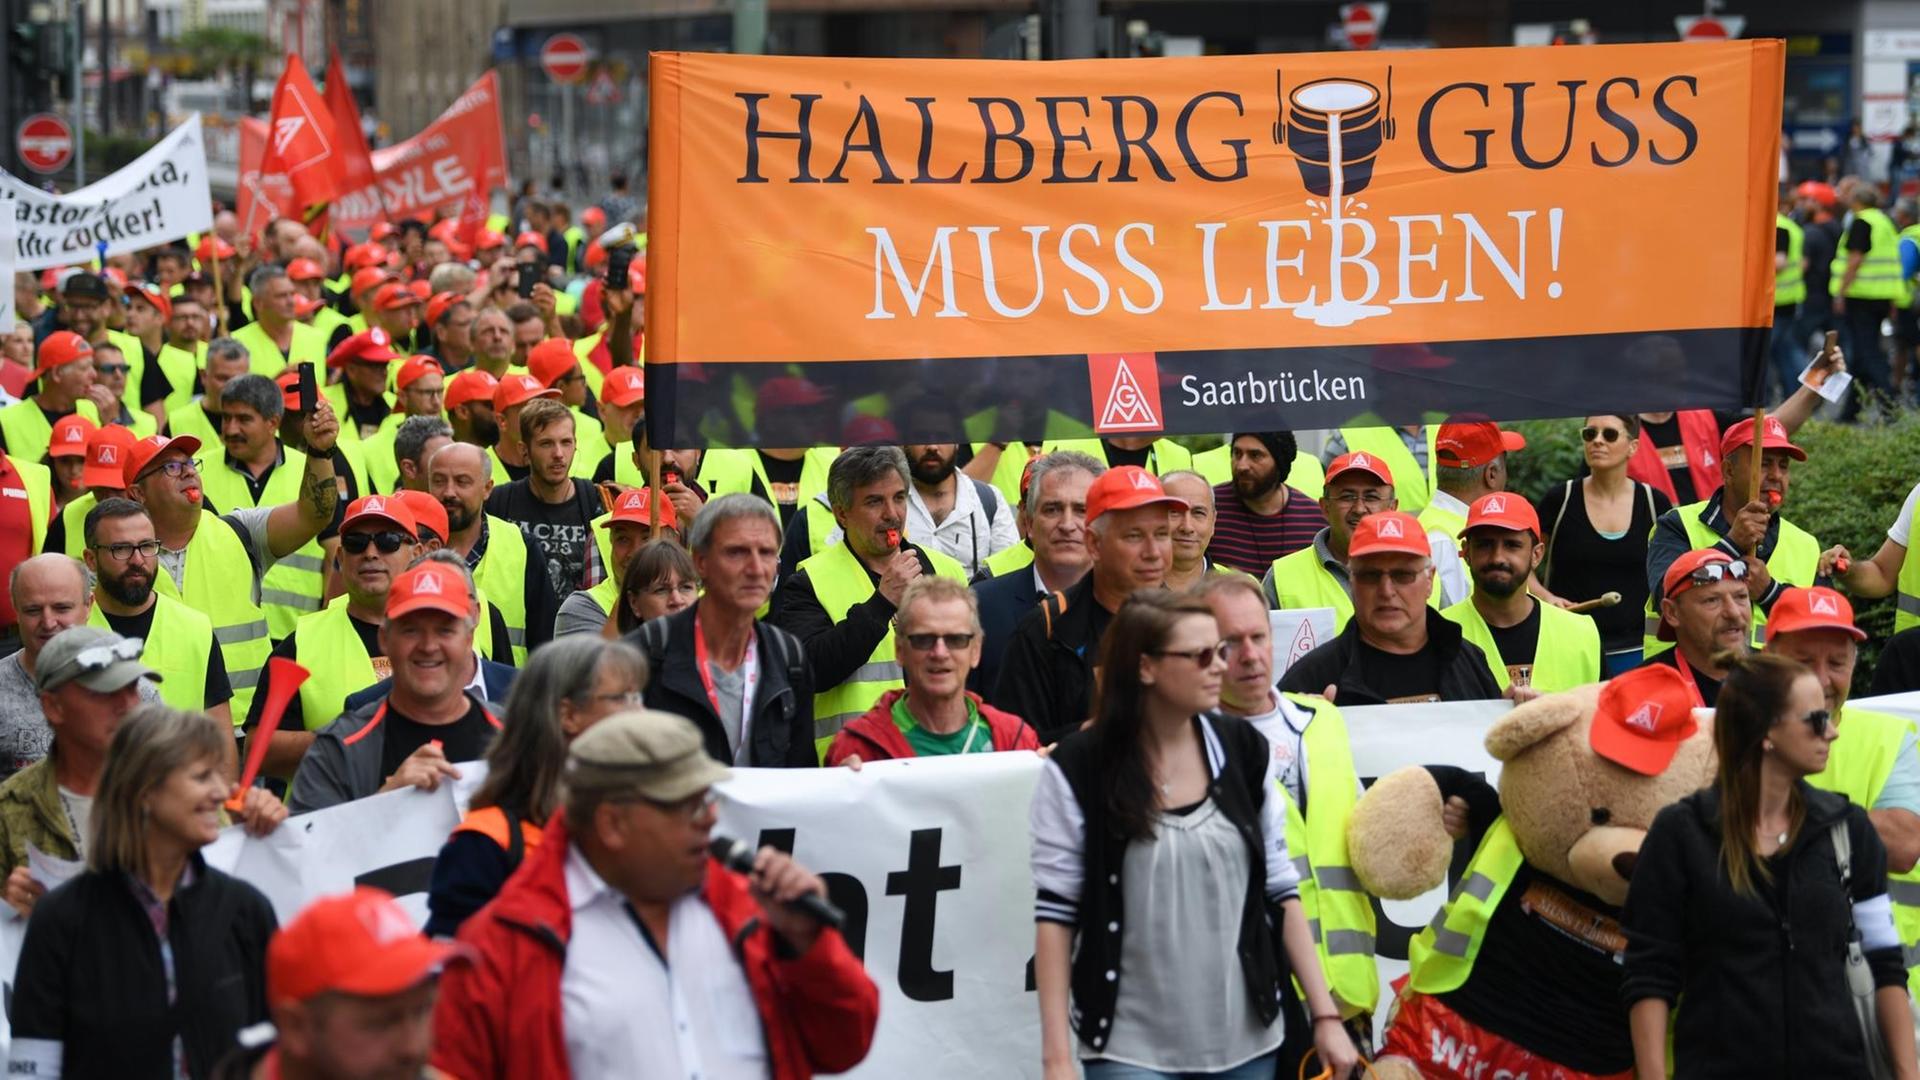 Beschäftigte des Autozulieferers Neue Halberg Guss (NHG) ziehen während einer Demonstration mit einem Transparent mit der Aufschrift "Halberg Guss muss leben" durch das Frankfurter Bahnhofsviertel.